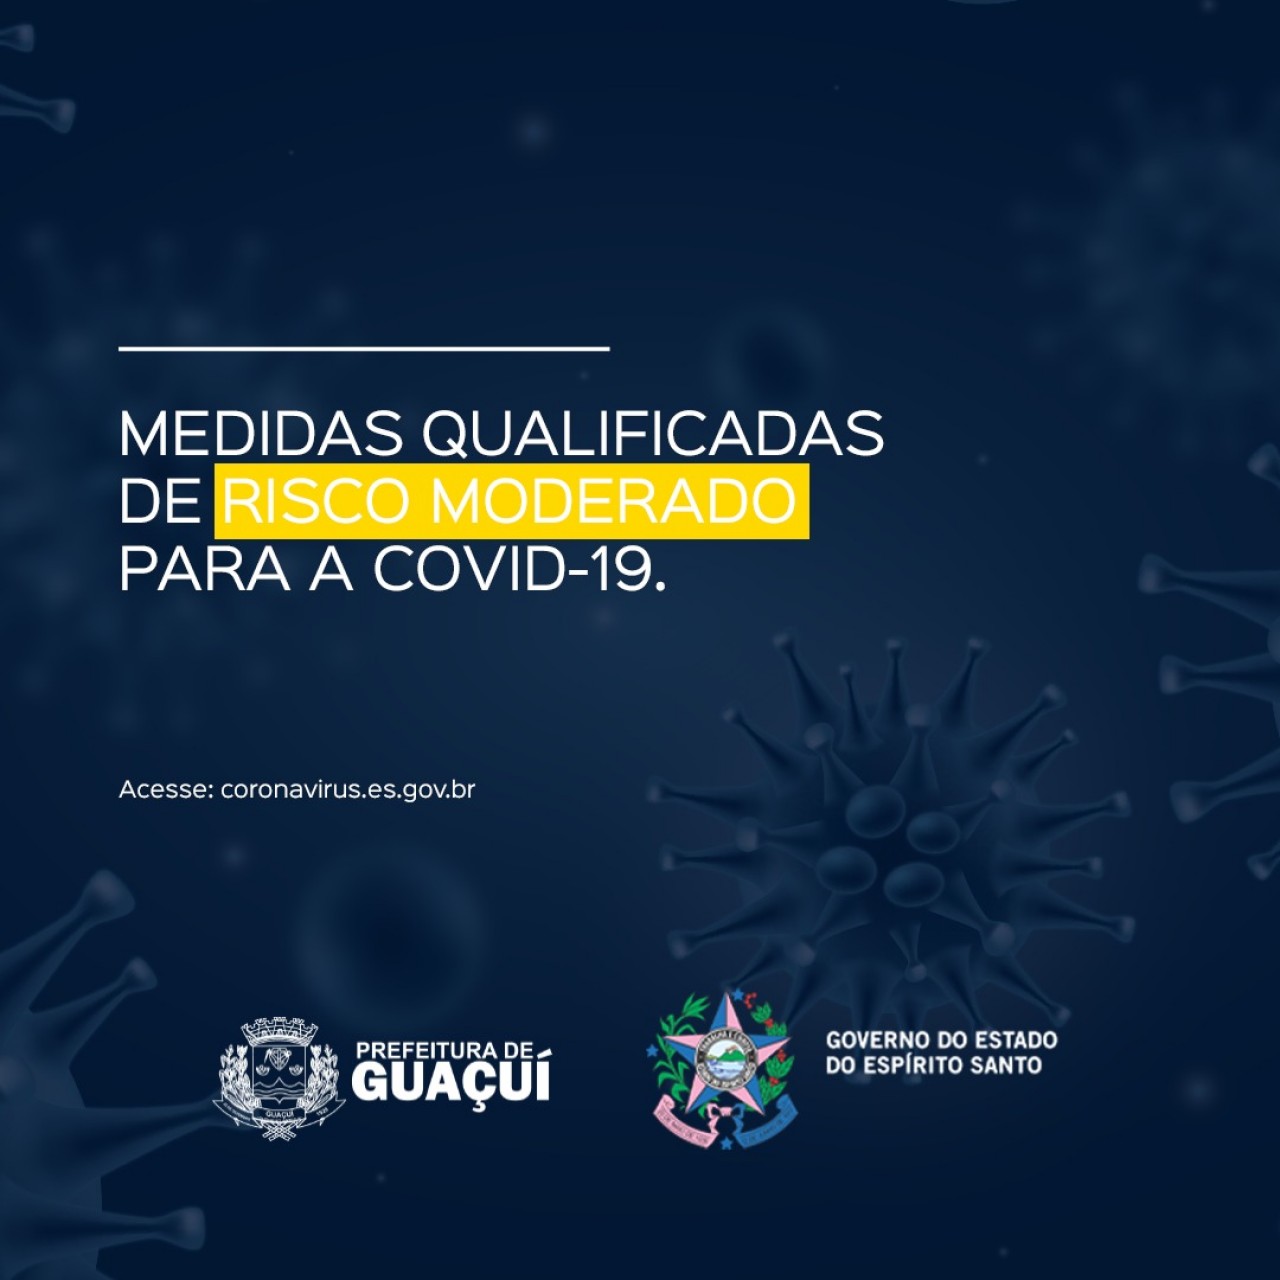 Esta semana Guaçuí está em risco moderado no 56º Mapa de Risco Covid-19. Confira as medidas de prevenção: